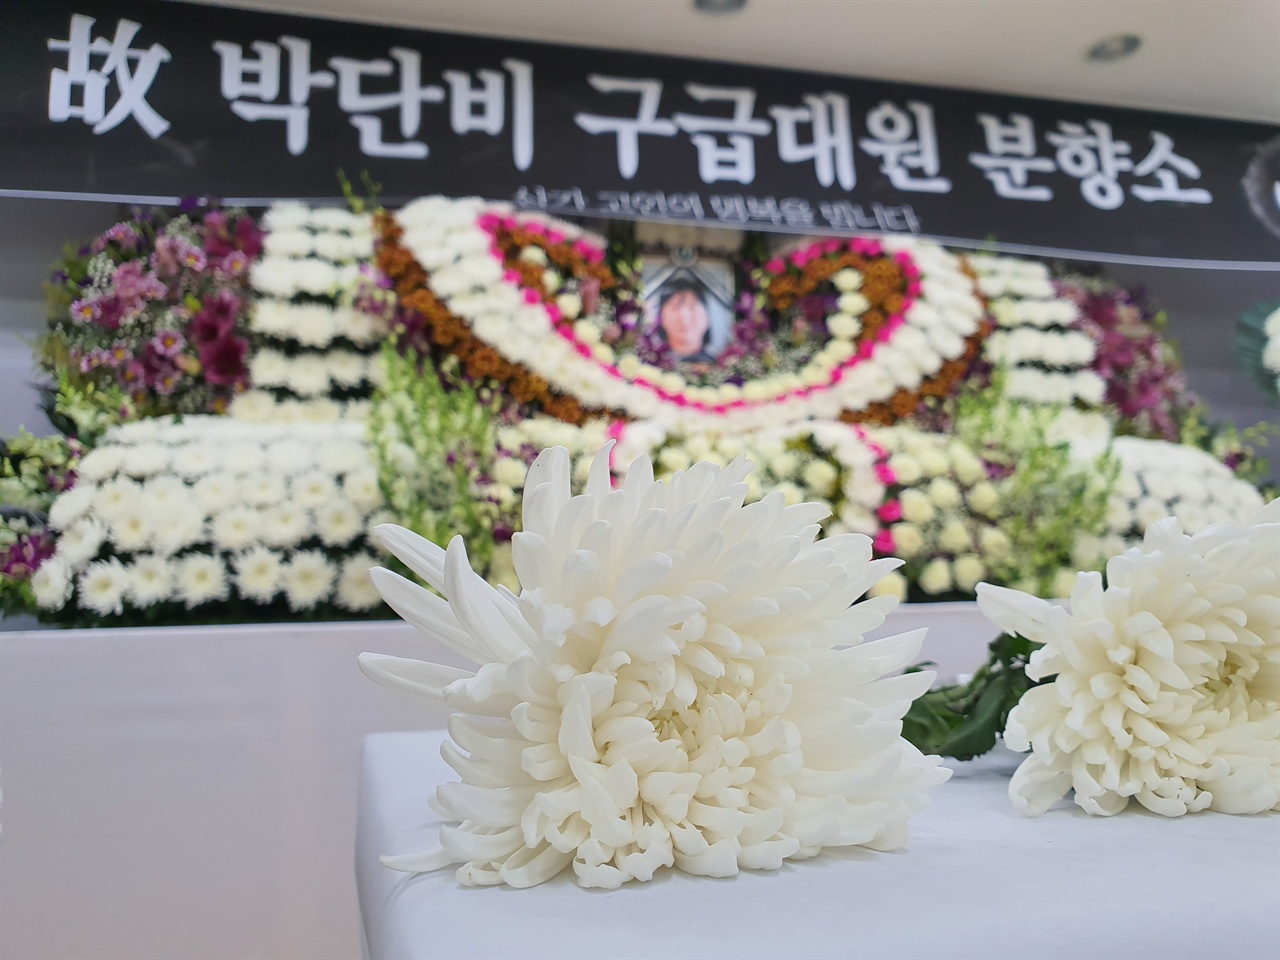 분향소를 지키고 있는 홍성읍의용소방대 관계자에 따르면 분향소가 차려진 첫날부터 많은 군민이 찾아 박대원을 추모하고 있다고 밝혔다. 박 대원 영정 앞에 국화꽃이 놓여져 있다.